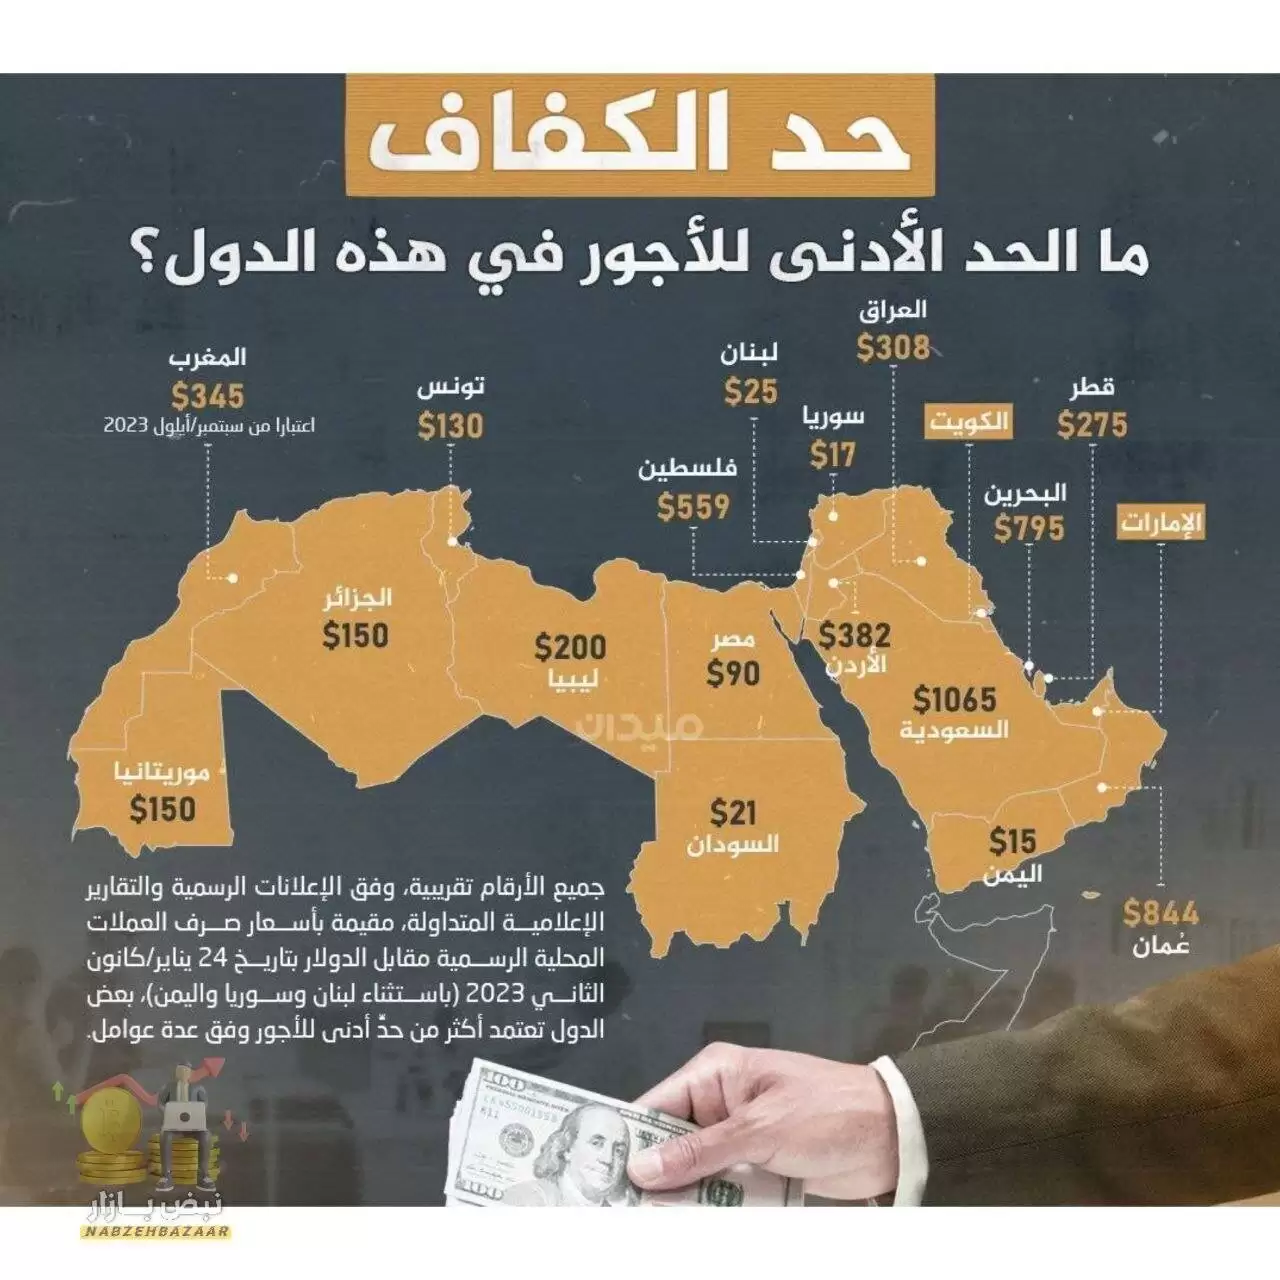 حداقل دستمزد در هر یک از کشور های جهان عرب چند دلار است؟